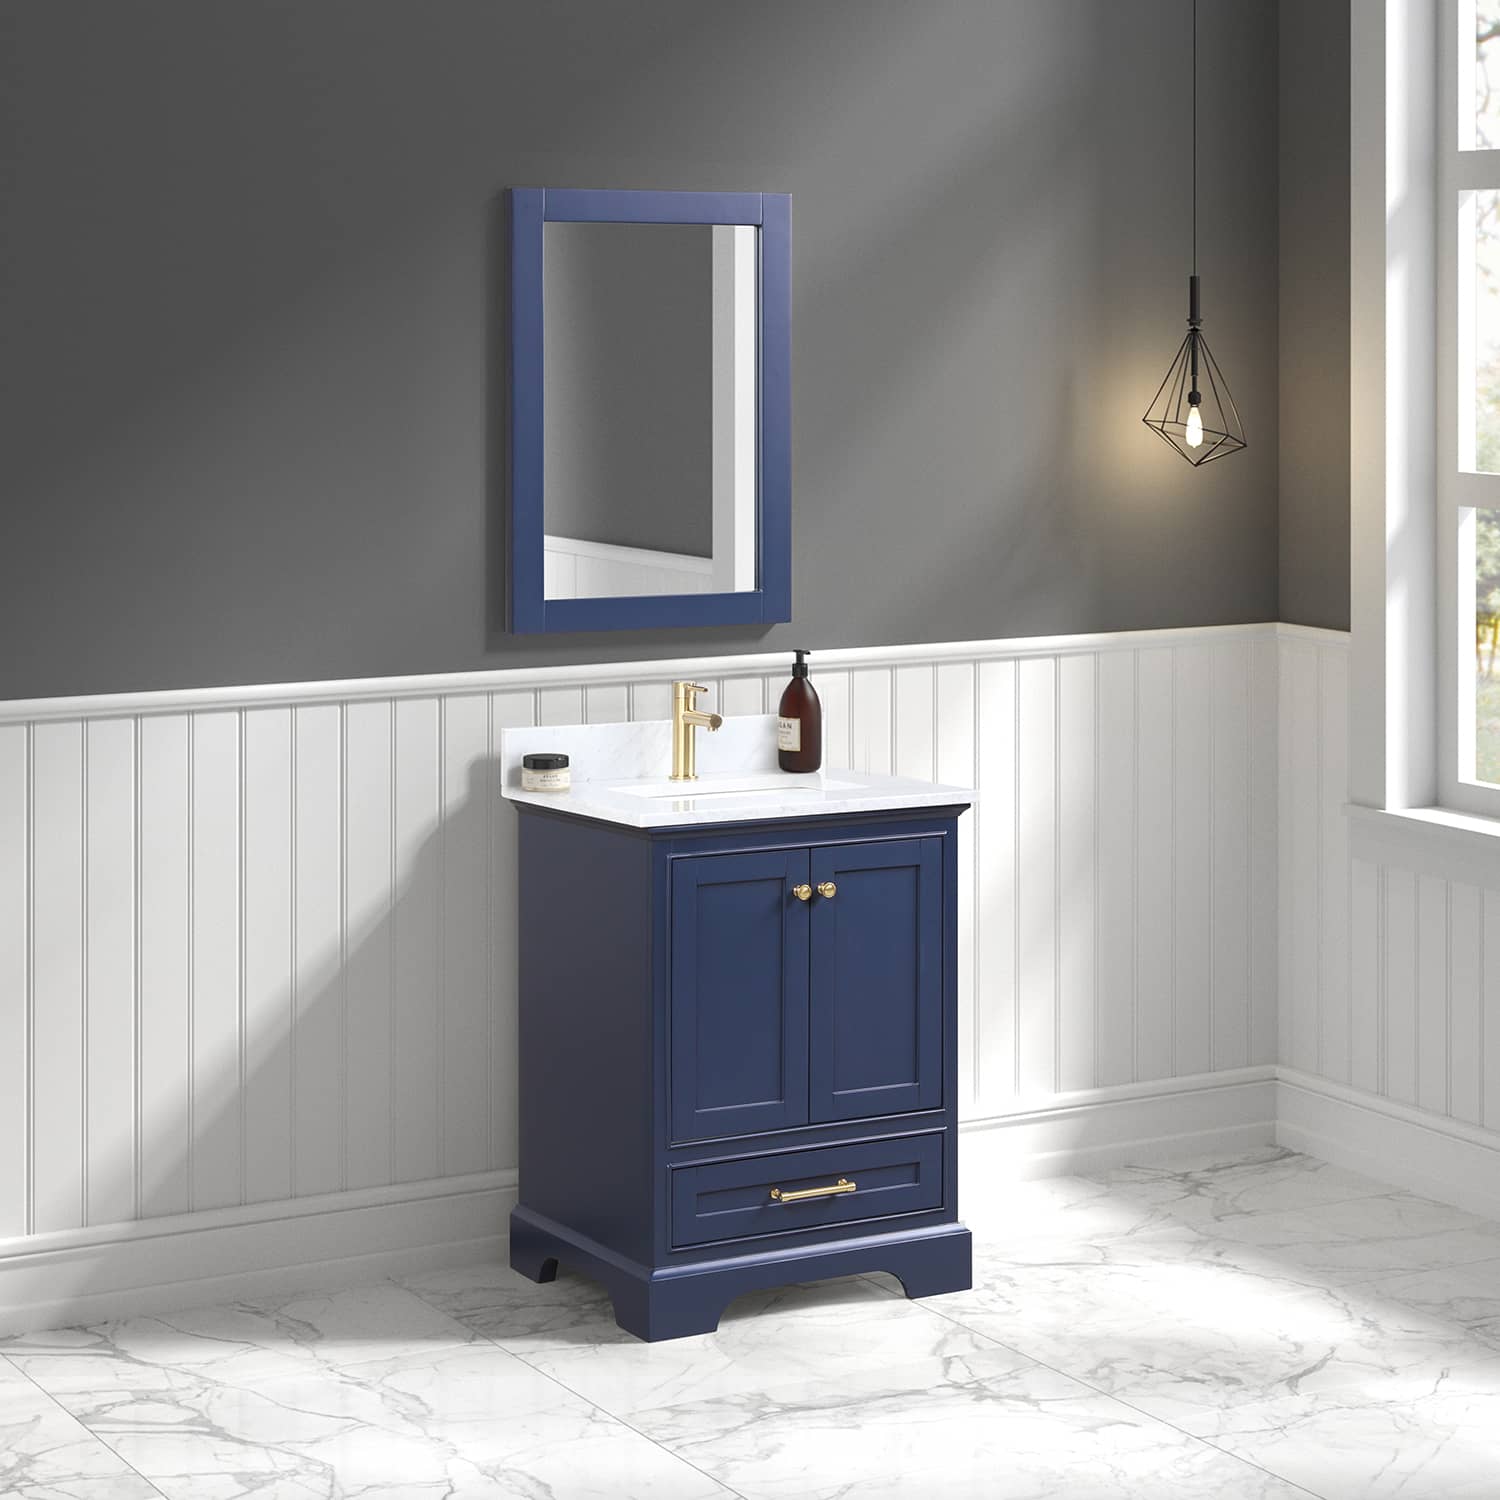 Copenhagen 24" Bathroom Vanity  #size_24"  #color_navy blue